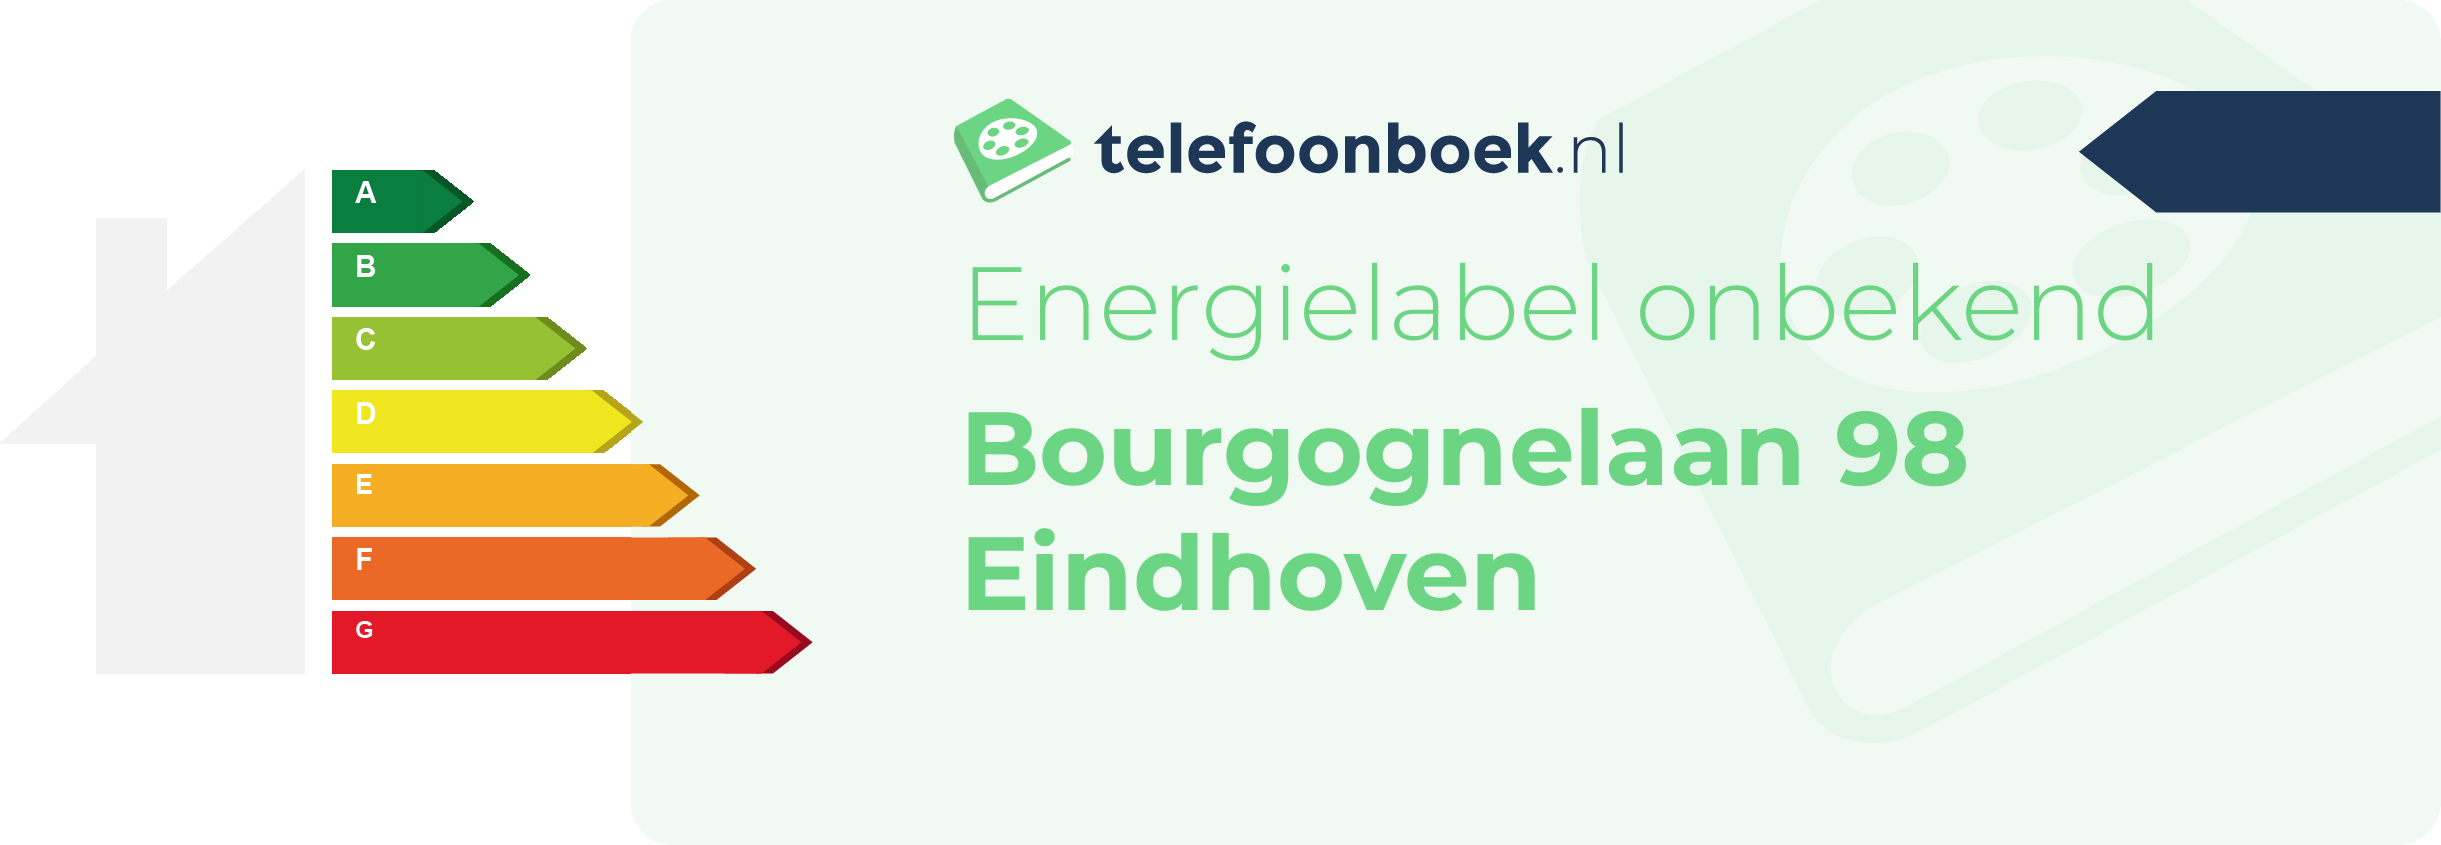 Energielabel Bourgognelaan 98 Eindhoven